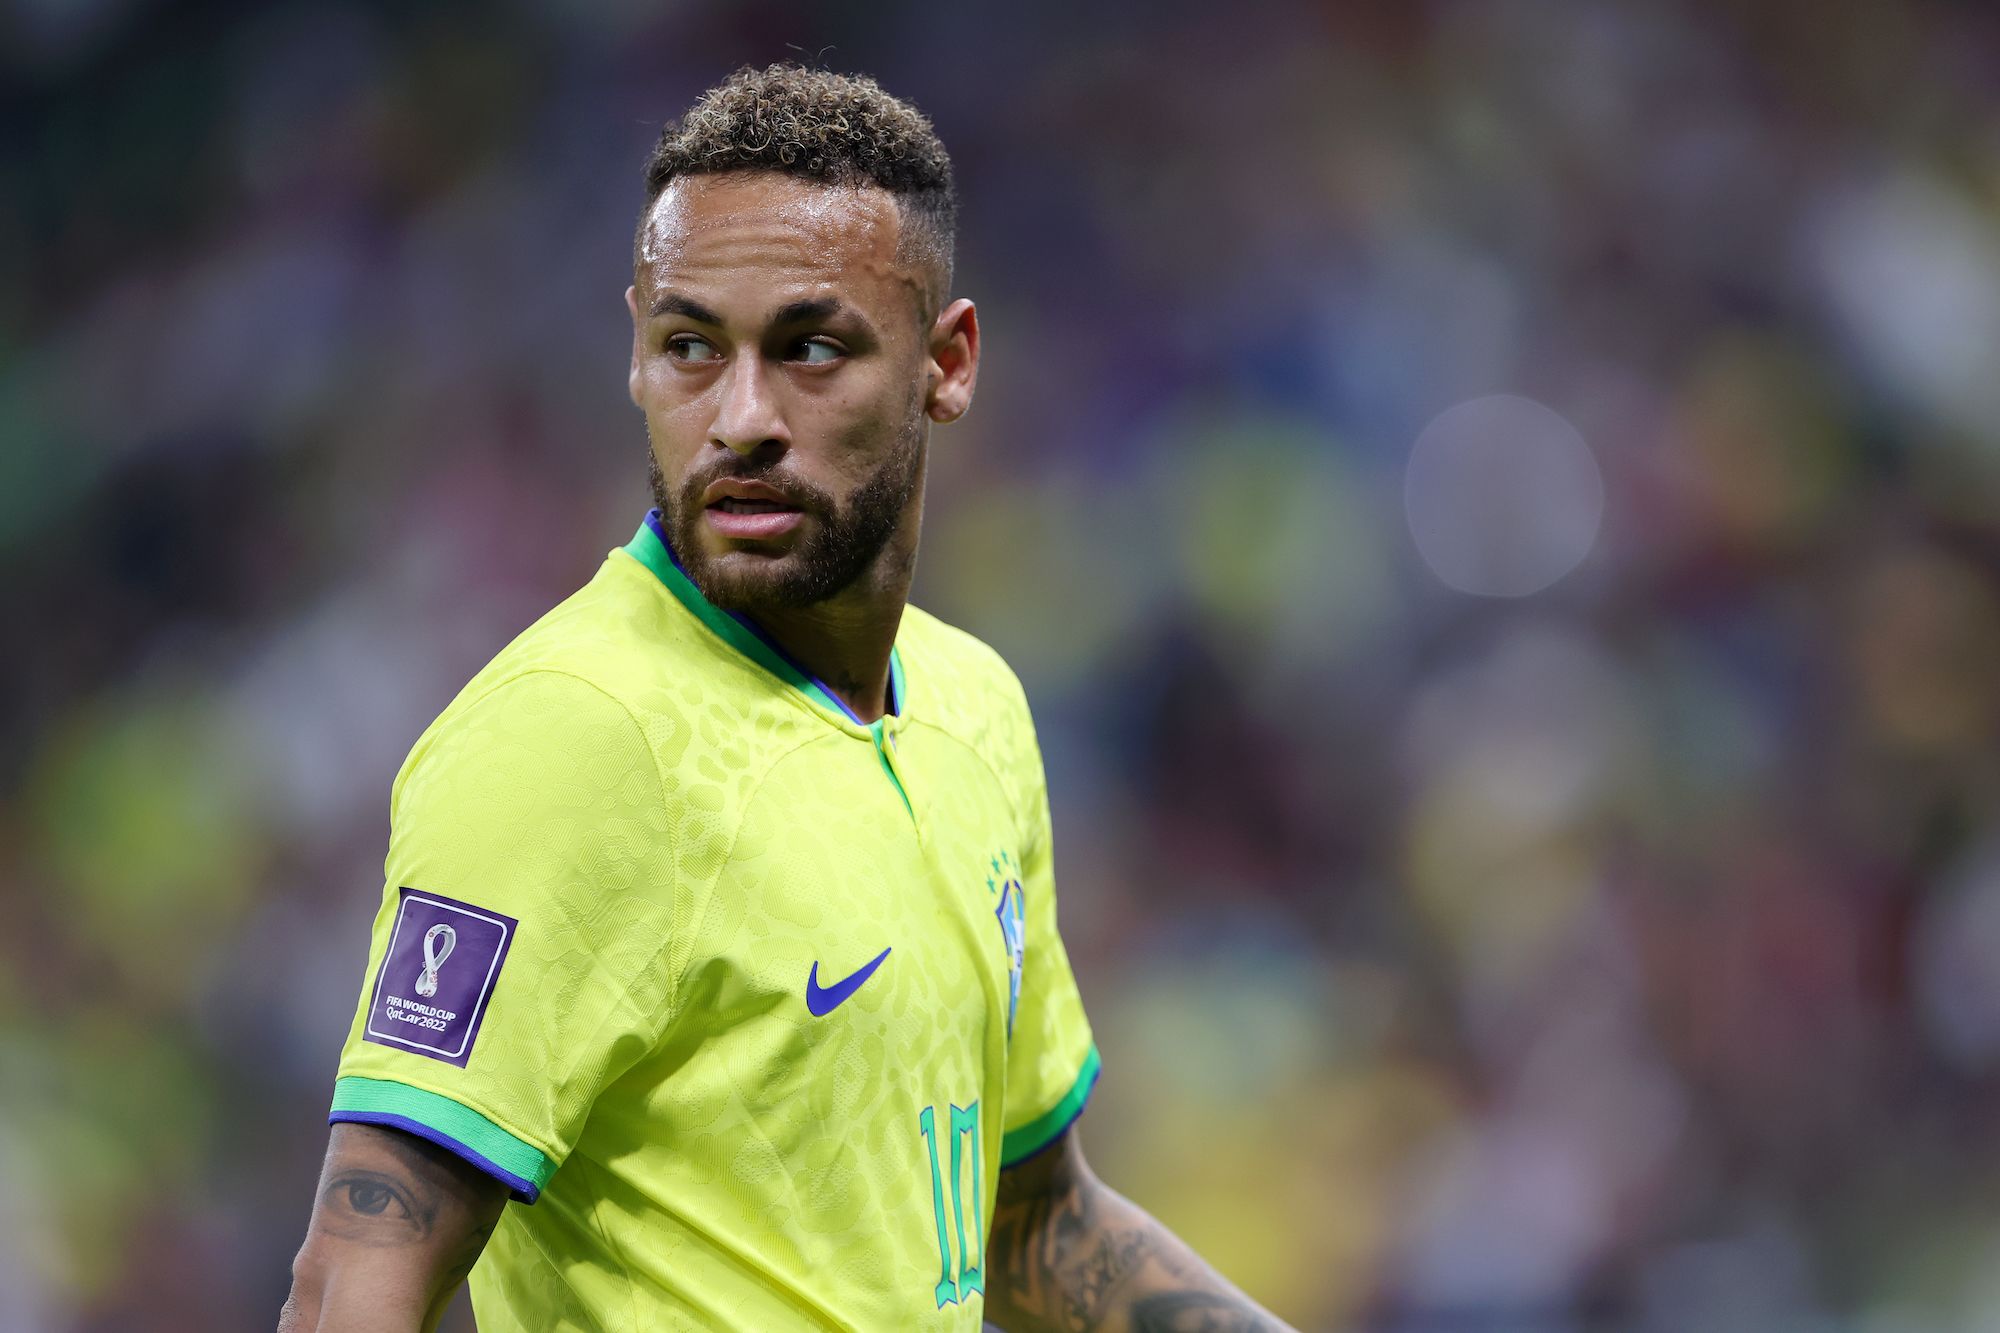 Brazil soccer star Neymar fined $3.5 million for environmental offense